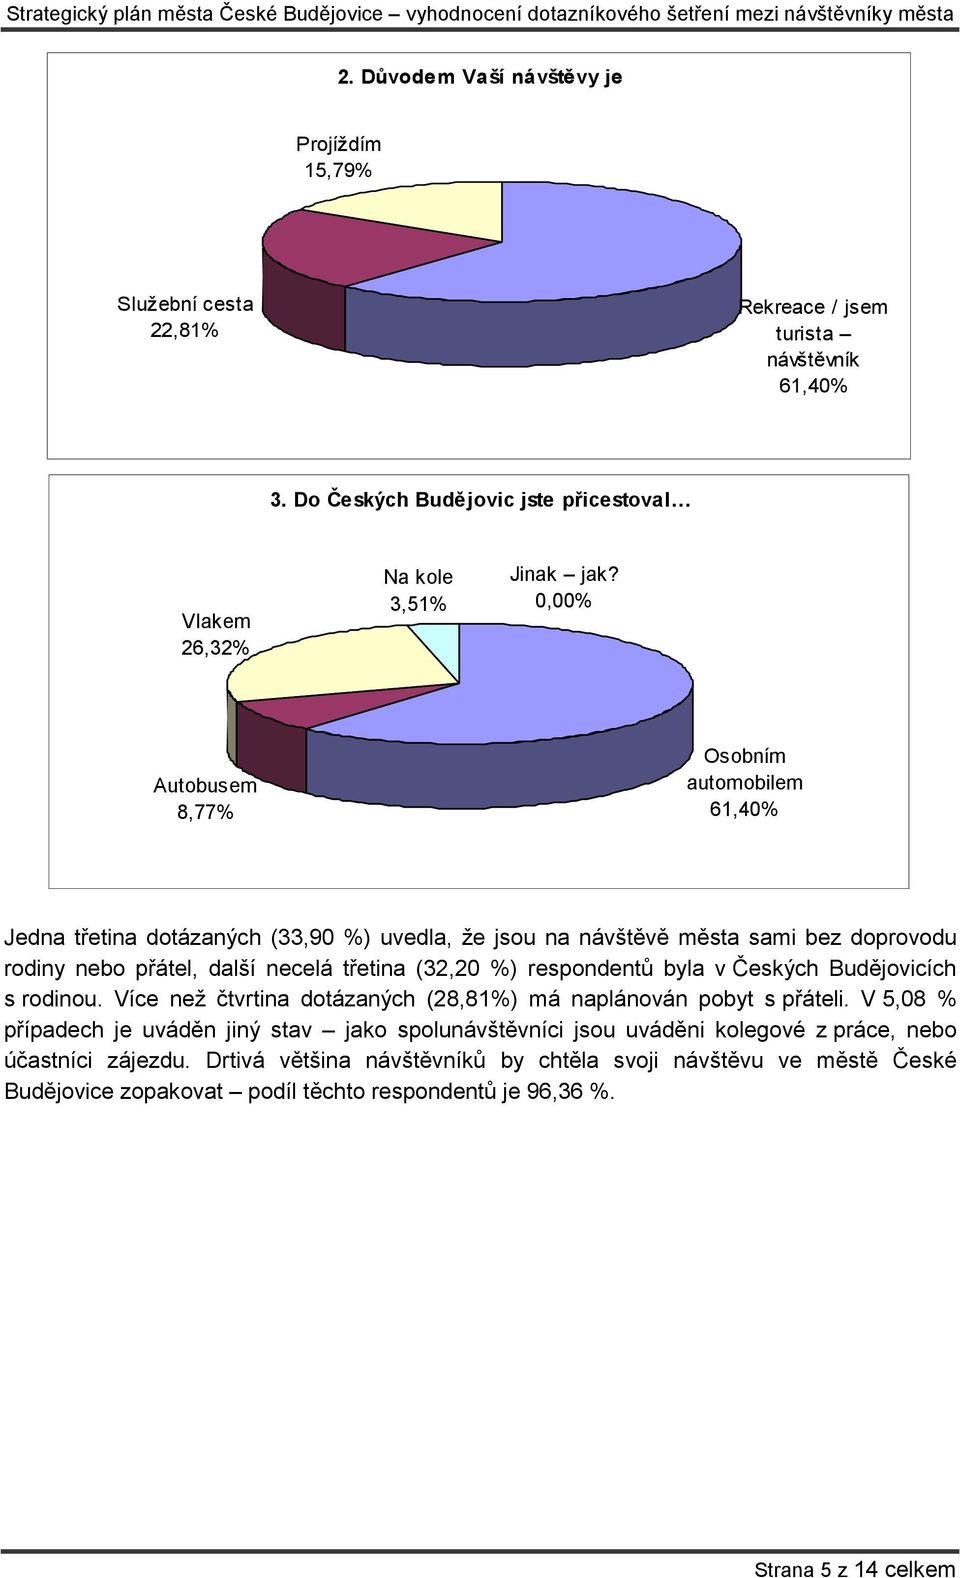 respondentů byla v Českých Budějovicích s rodinou. Více než čtvrtina dotázaných (28,81%) má naplánován pobyt s přáteli.